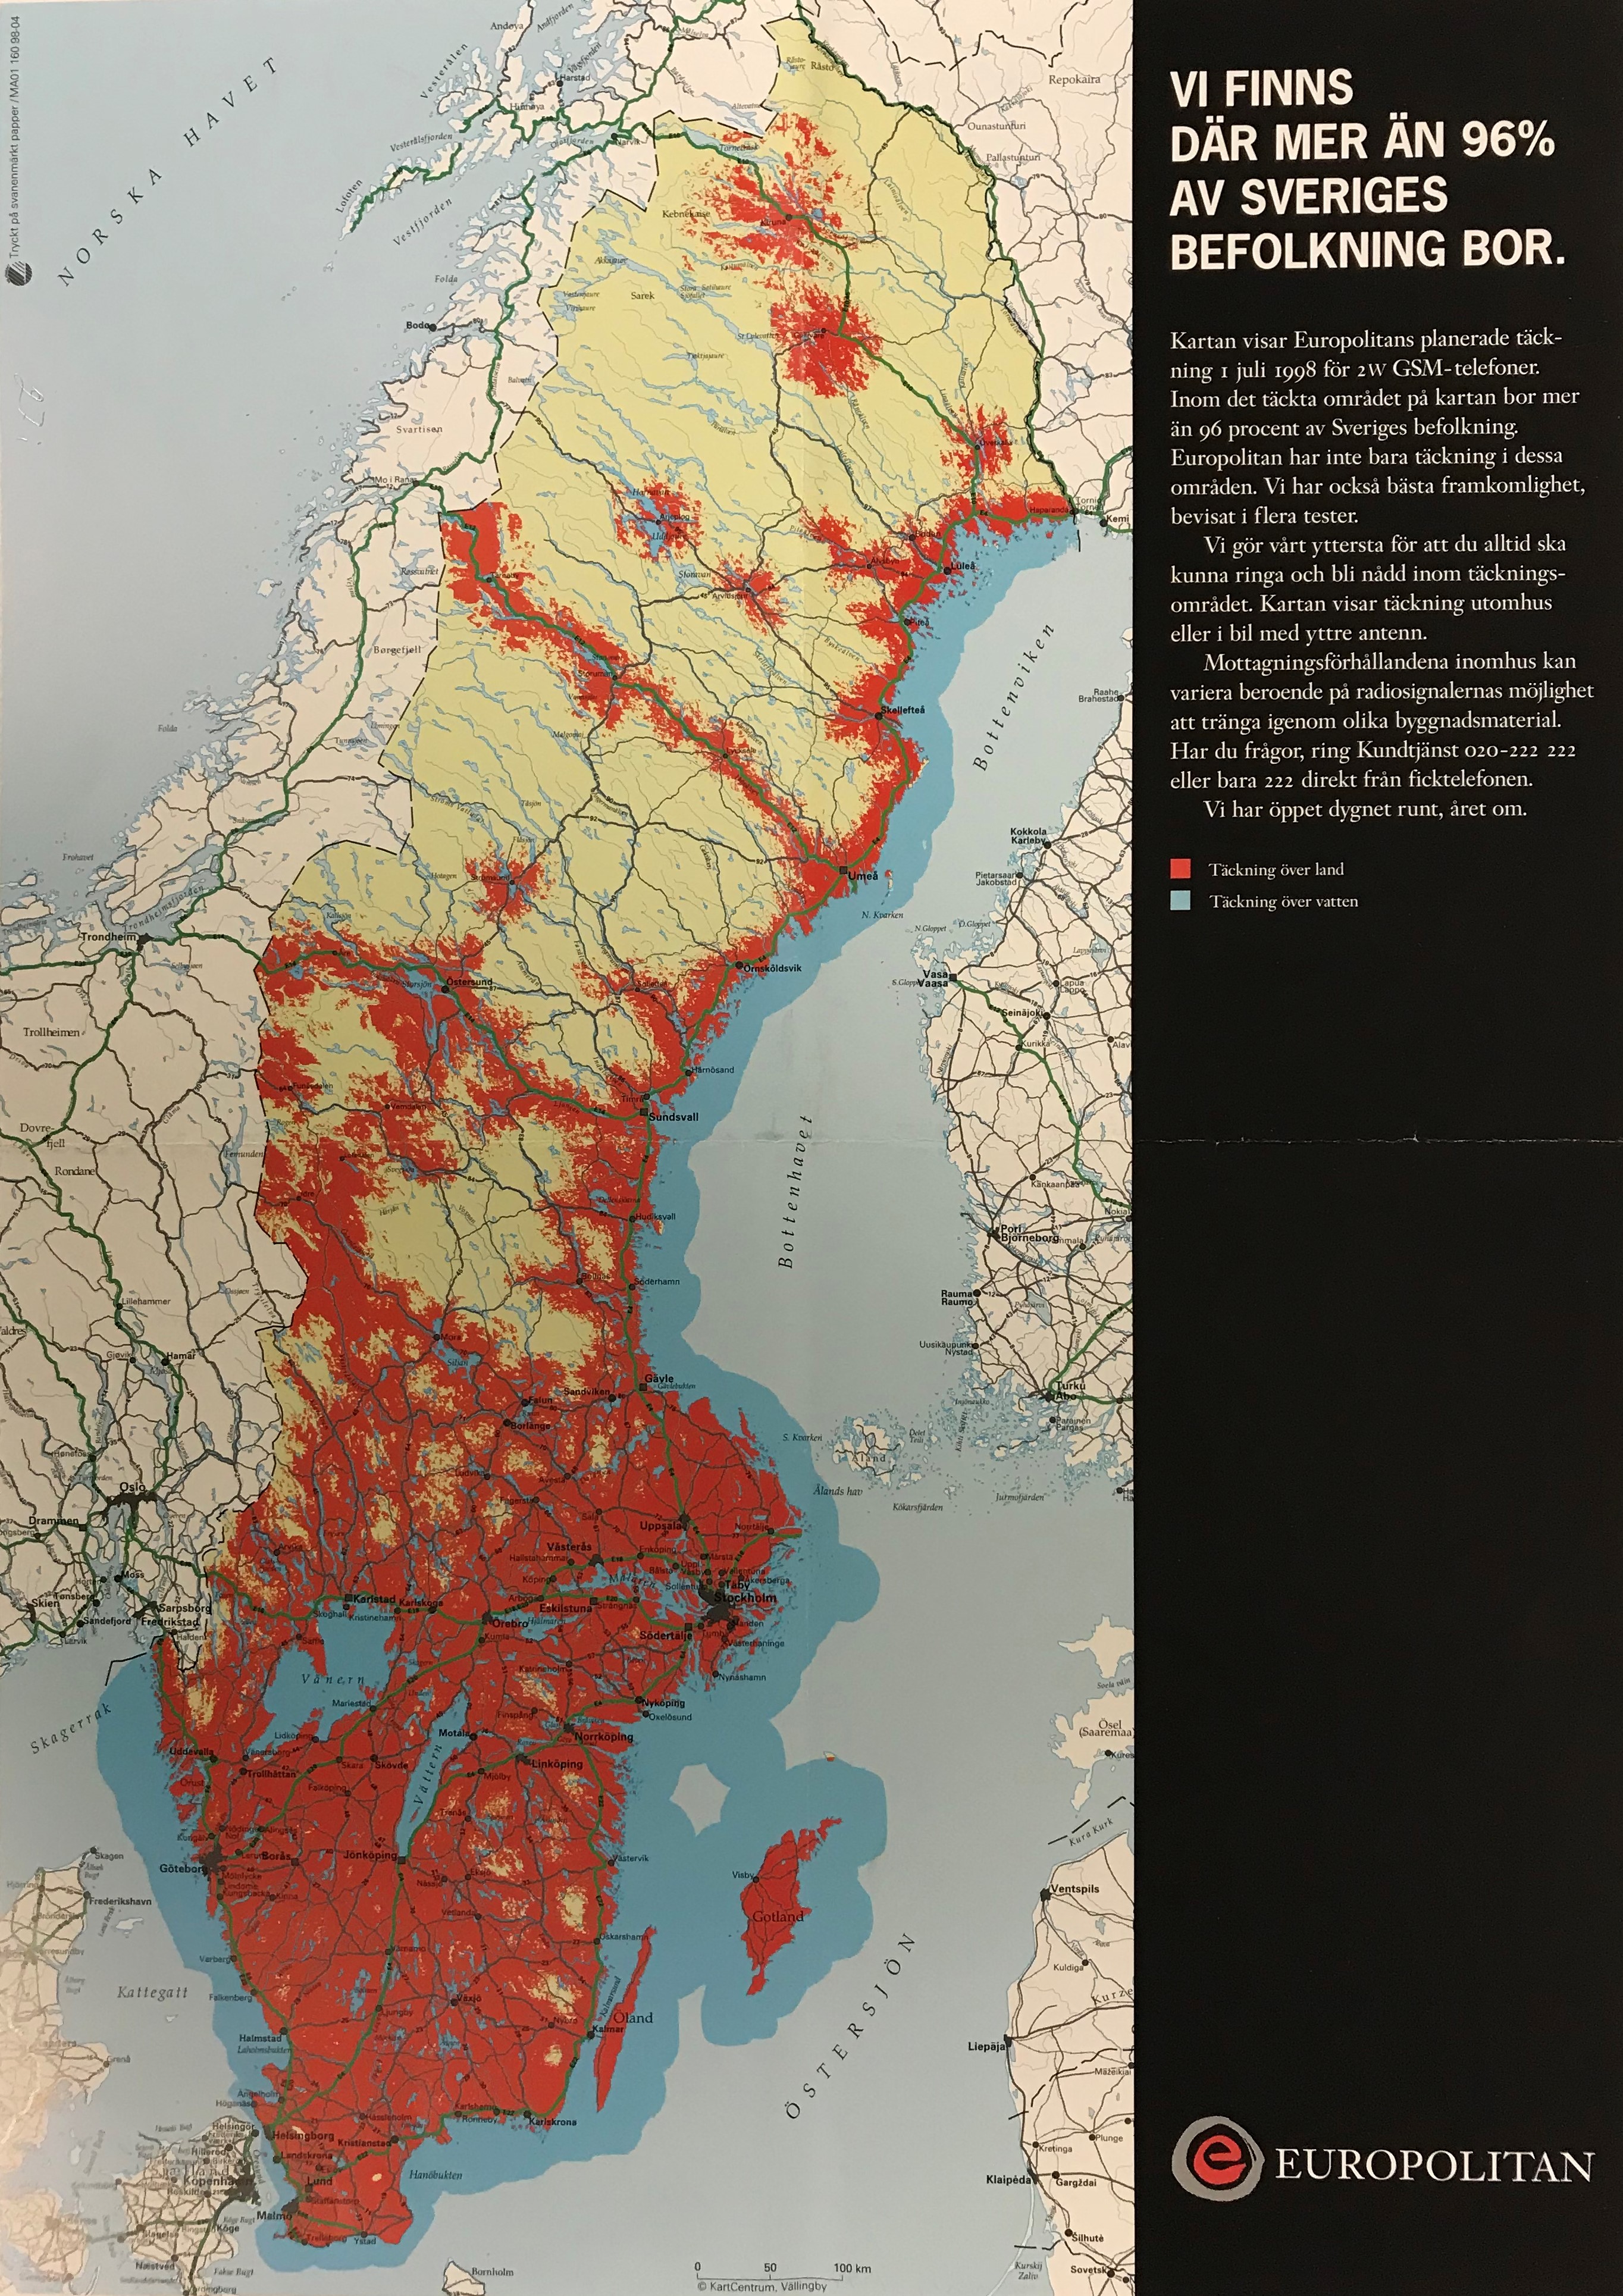 Karta över Sverige. Områden som har mobiltäckning markeras med röd färg. Större delen av södra Sverige är rödfärgat, men norra Sverige endast delvis är täckt.